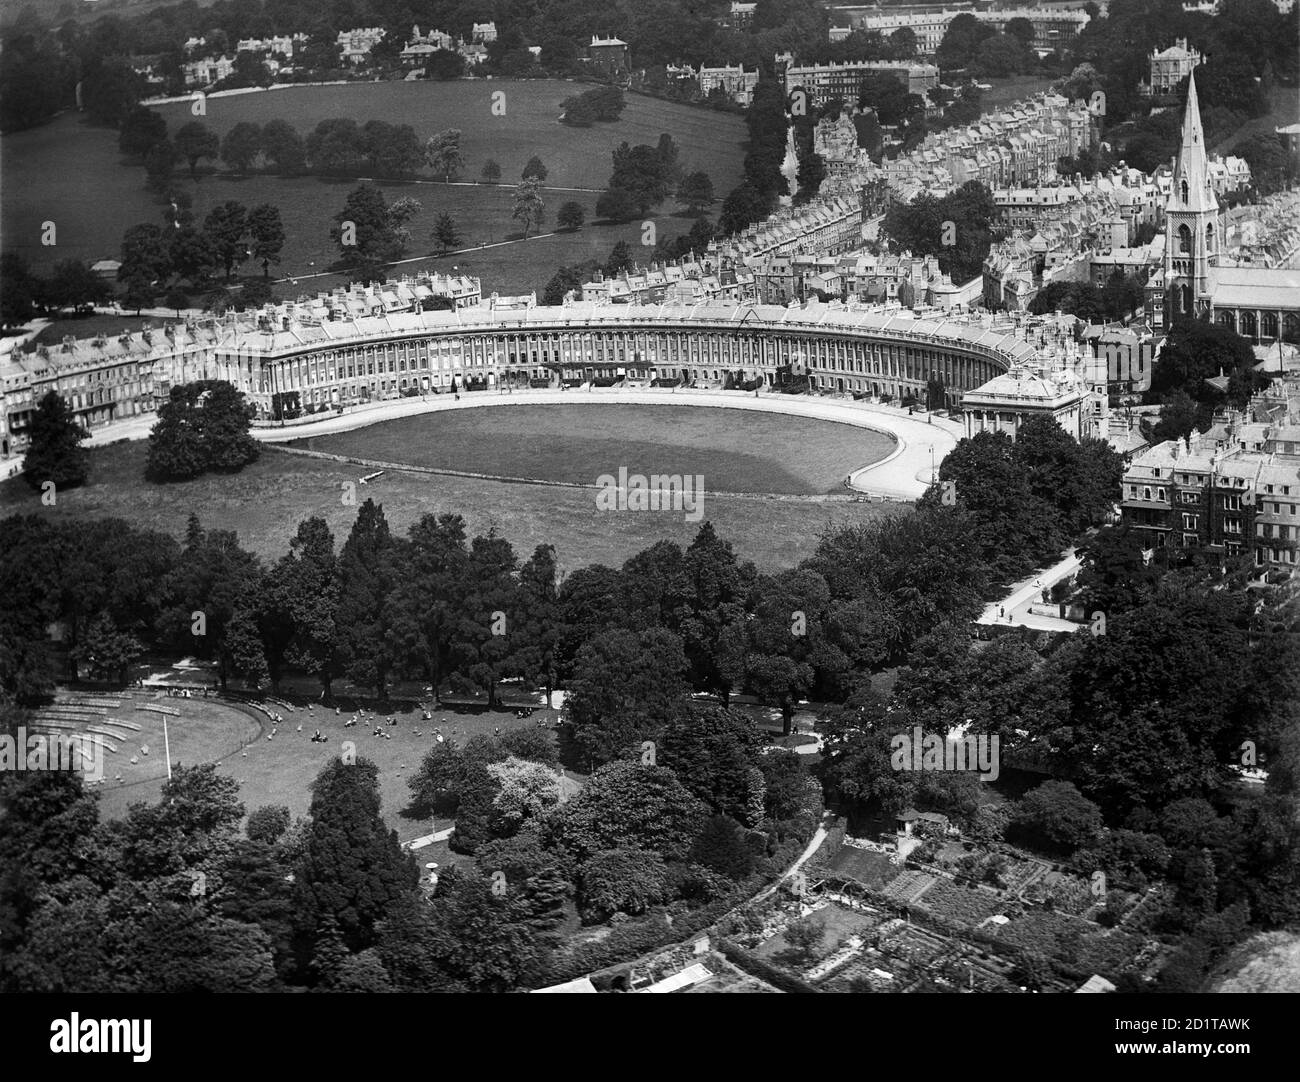 BAGNO, Somerset. Veduta aerea della Royal Crescent, Bath, costruita tra il 1767 e il 1774 da John Wood. E' considerato tra i più grandi esempi di architettura georgiana. Fotografato nel luglio 1920. Aerofilms Collection (vedi link). Foto Stock